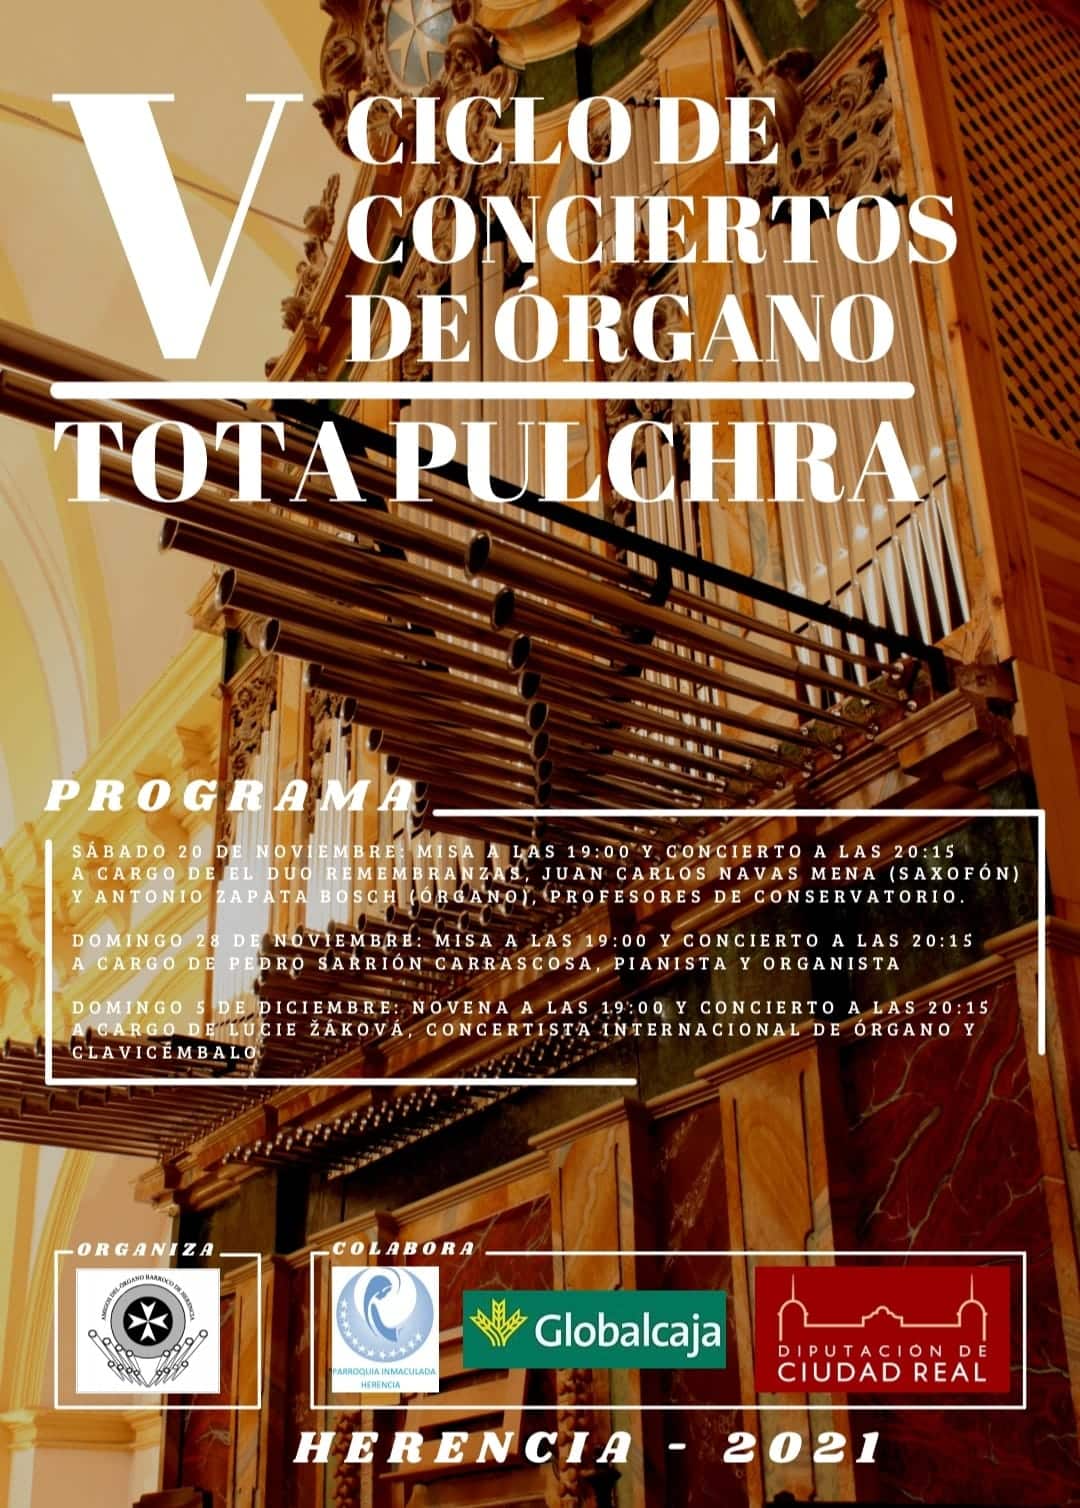 V Ciclo de Conciertos de Órgano Totapulchra en Herencia 3